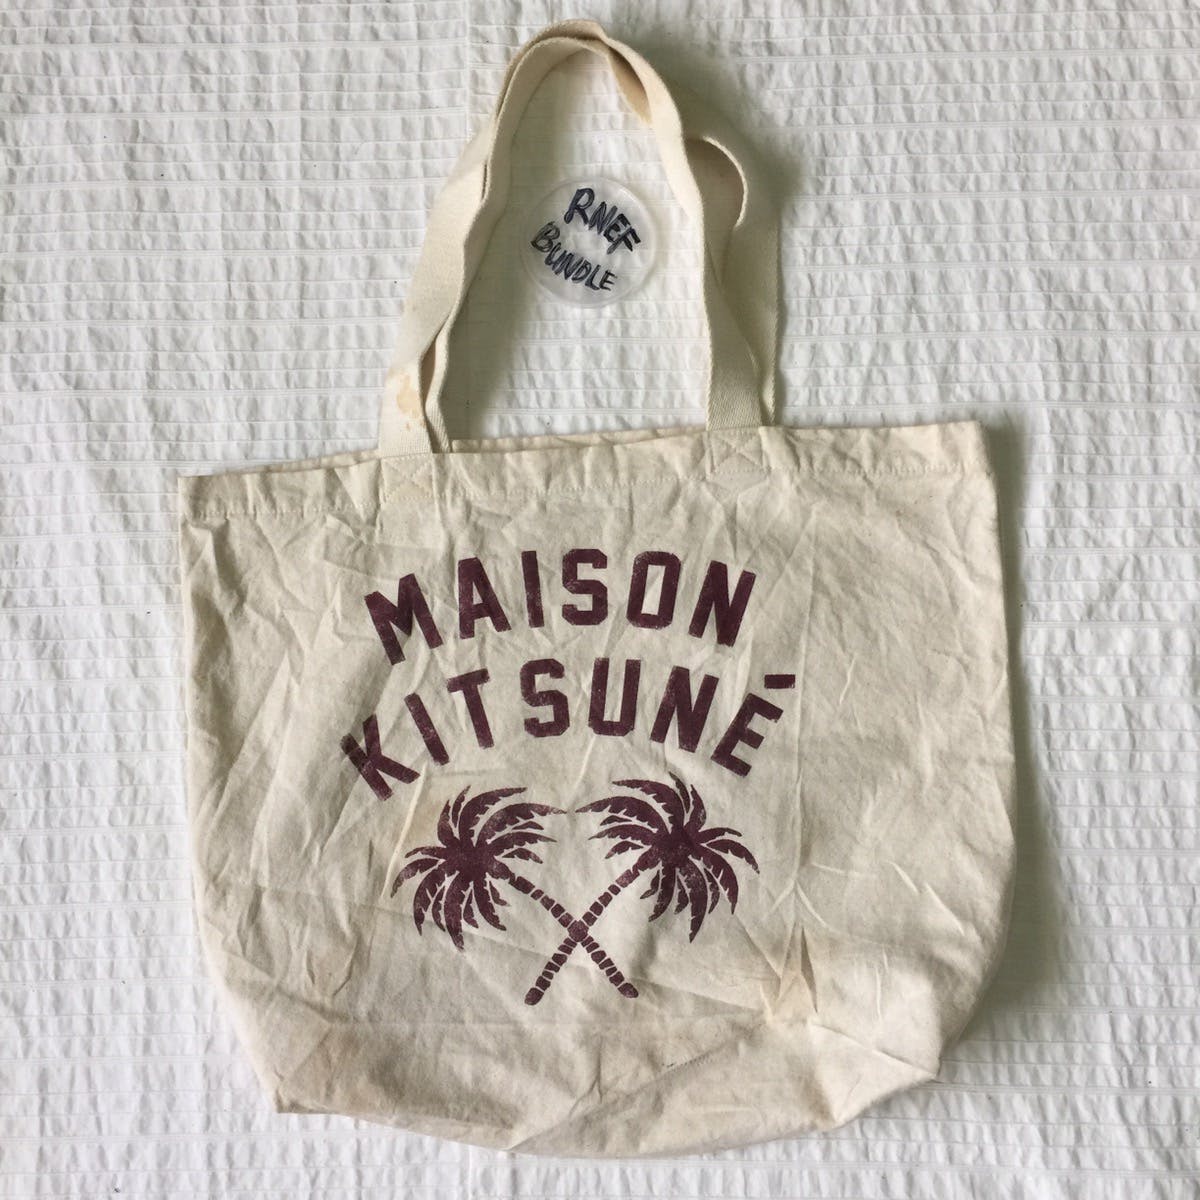 Maison kitsune tote bag - 1